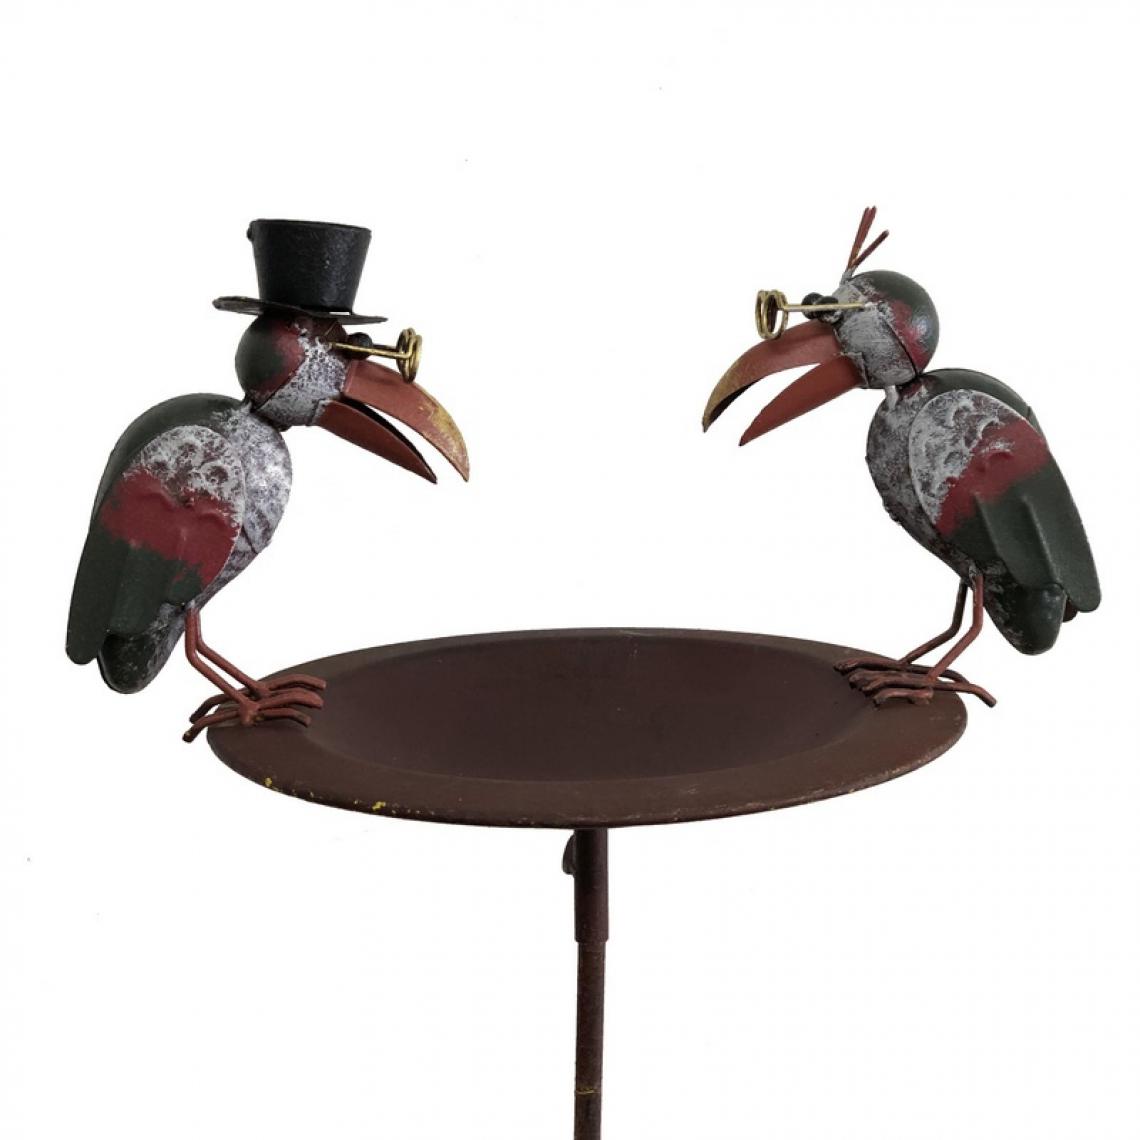 L'Originale Deco - Bain d'Oiseaux Abreuvoir en Métal Fer Mangeoire Jardin 109 cm x 30 cm x 22 cm - Accessoires basse-cour